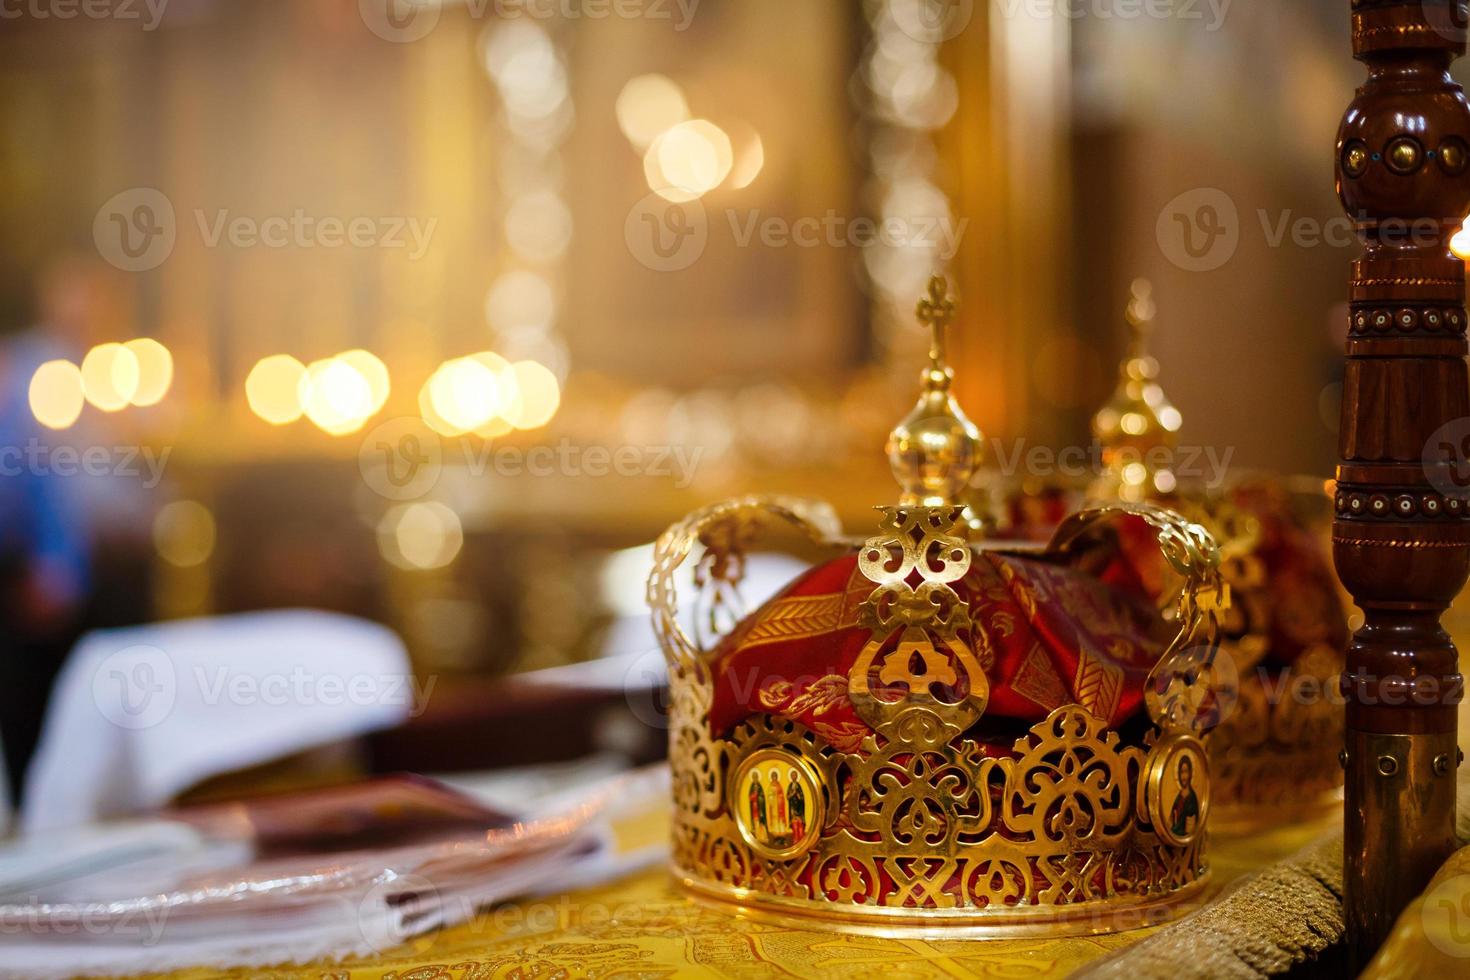 kroon voor bruiloft in orthodox kerk goud foto